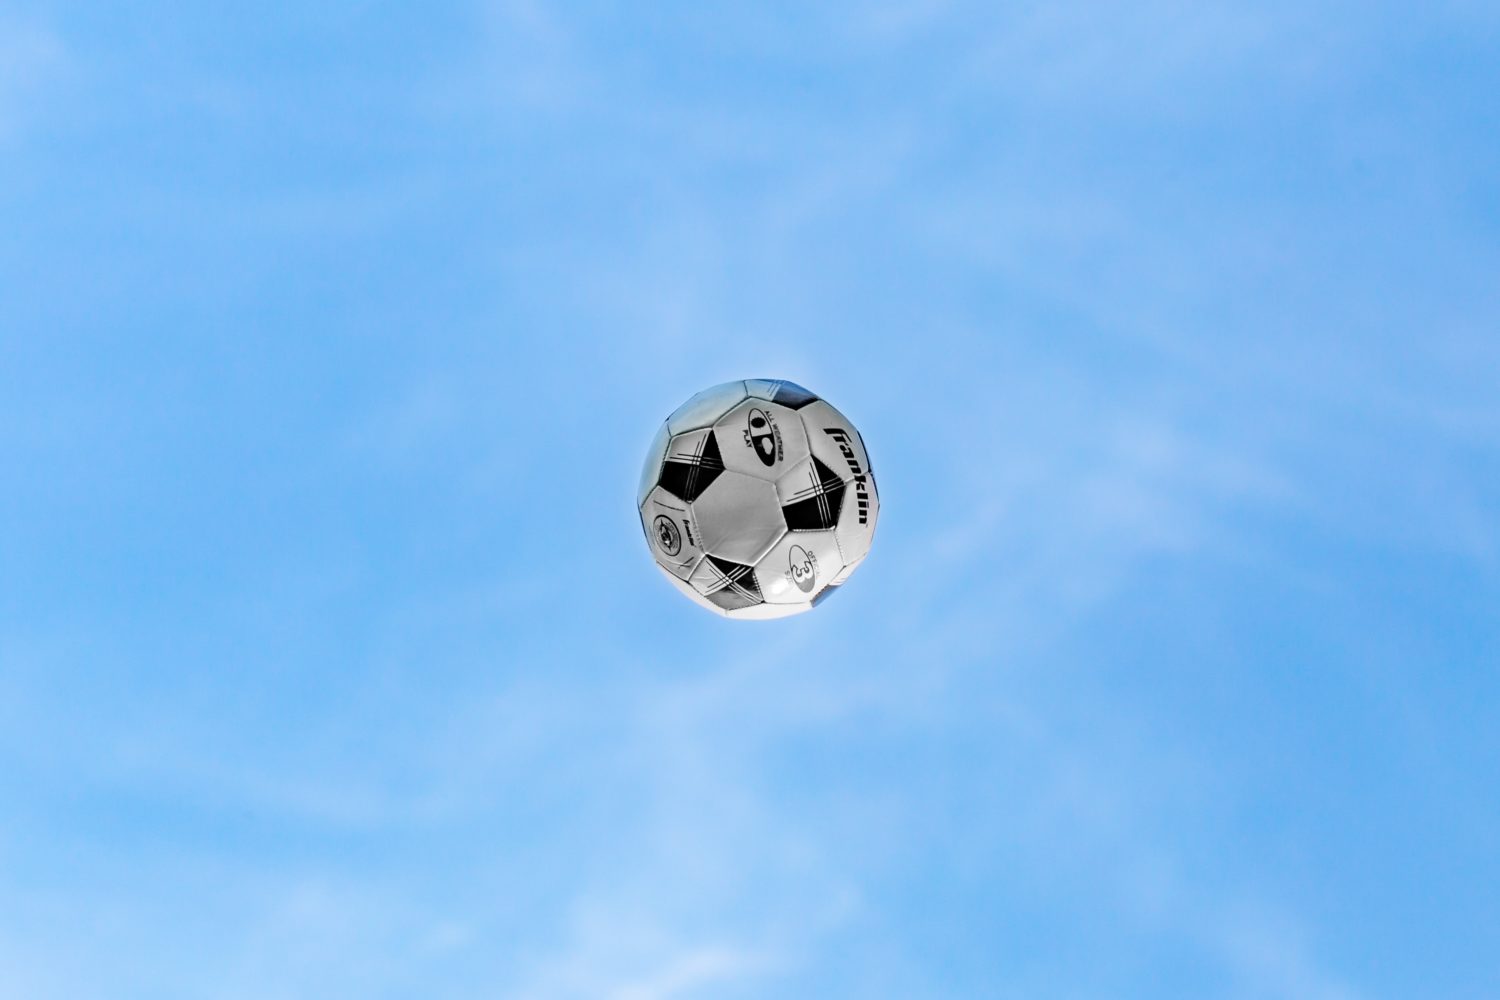 A soccer ball in the air.